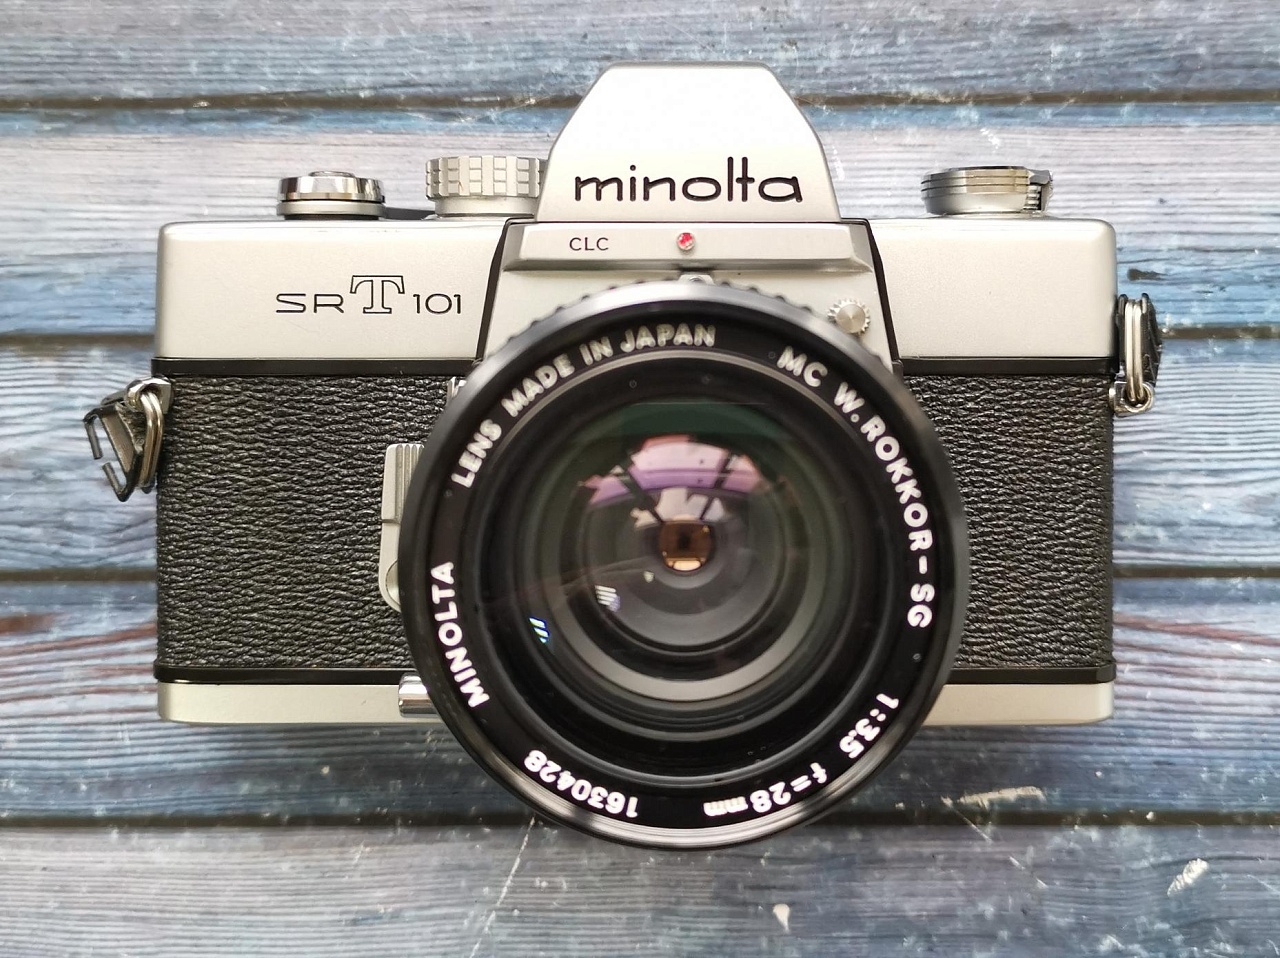 Minolta SRT 101 + Minolta md w. rokkor-x 28 mm f/3.5 фото №1